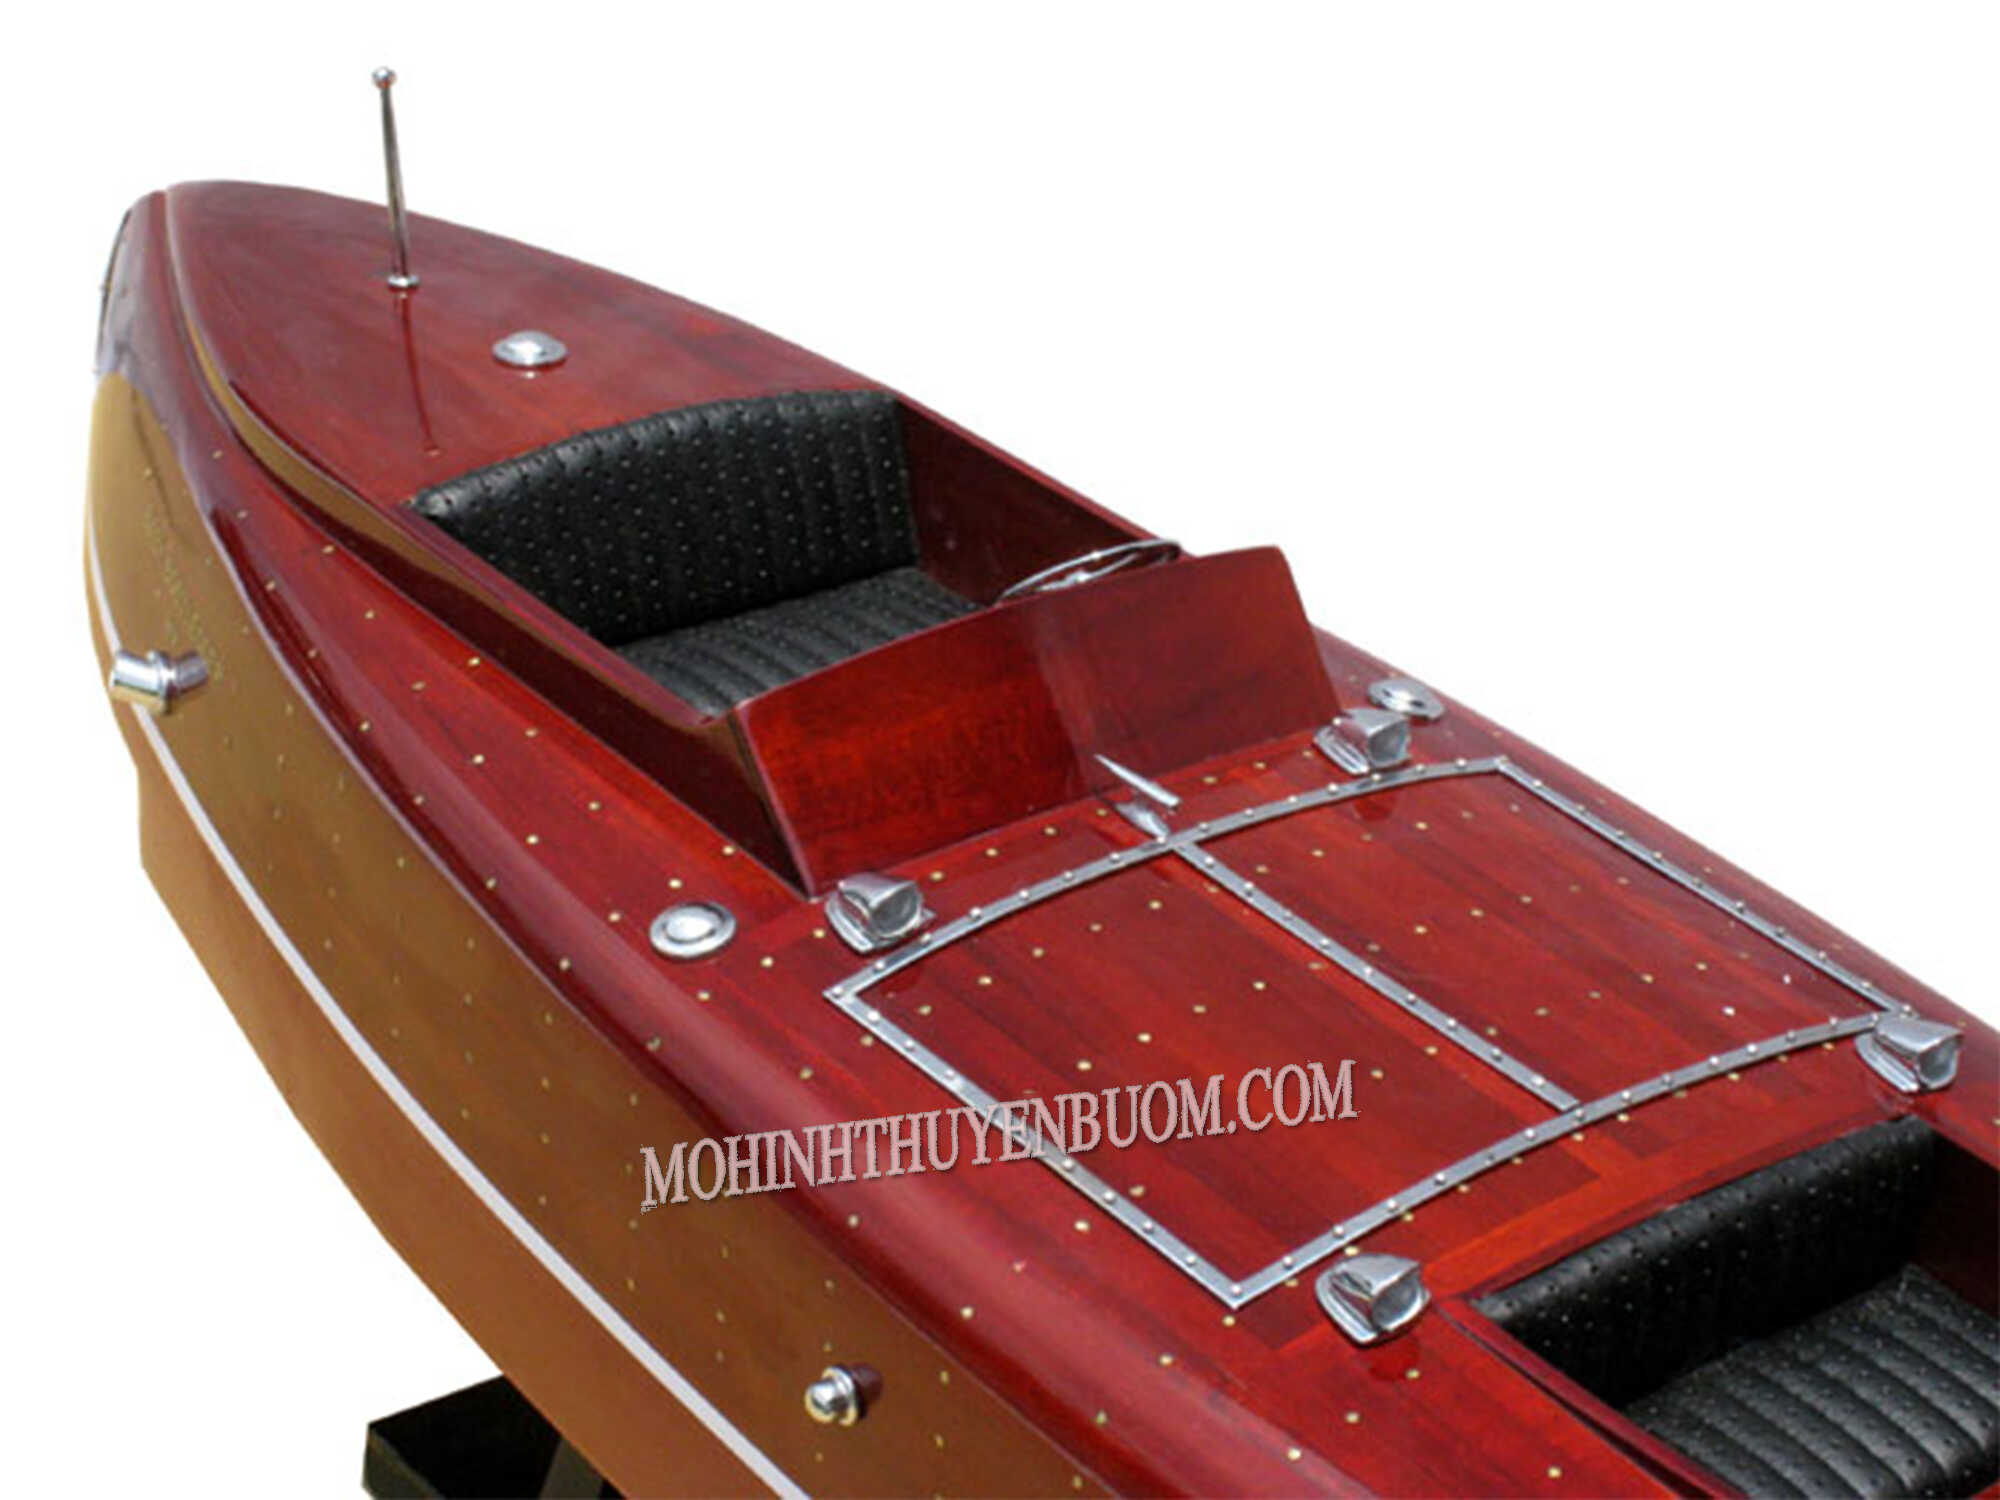 Baby Bootlegger Classic Speed Boat Model 35.4"